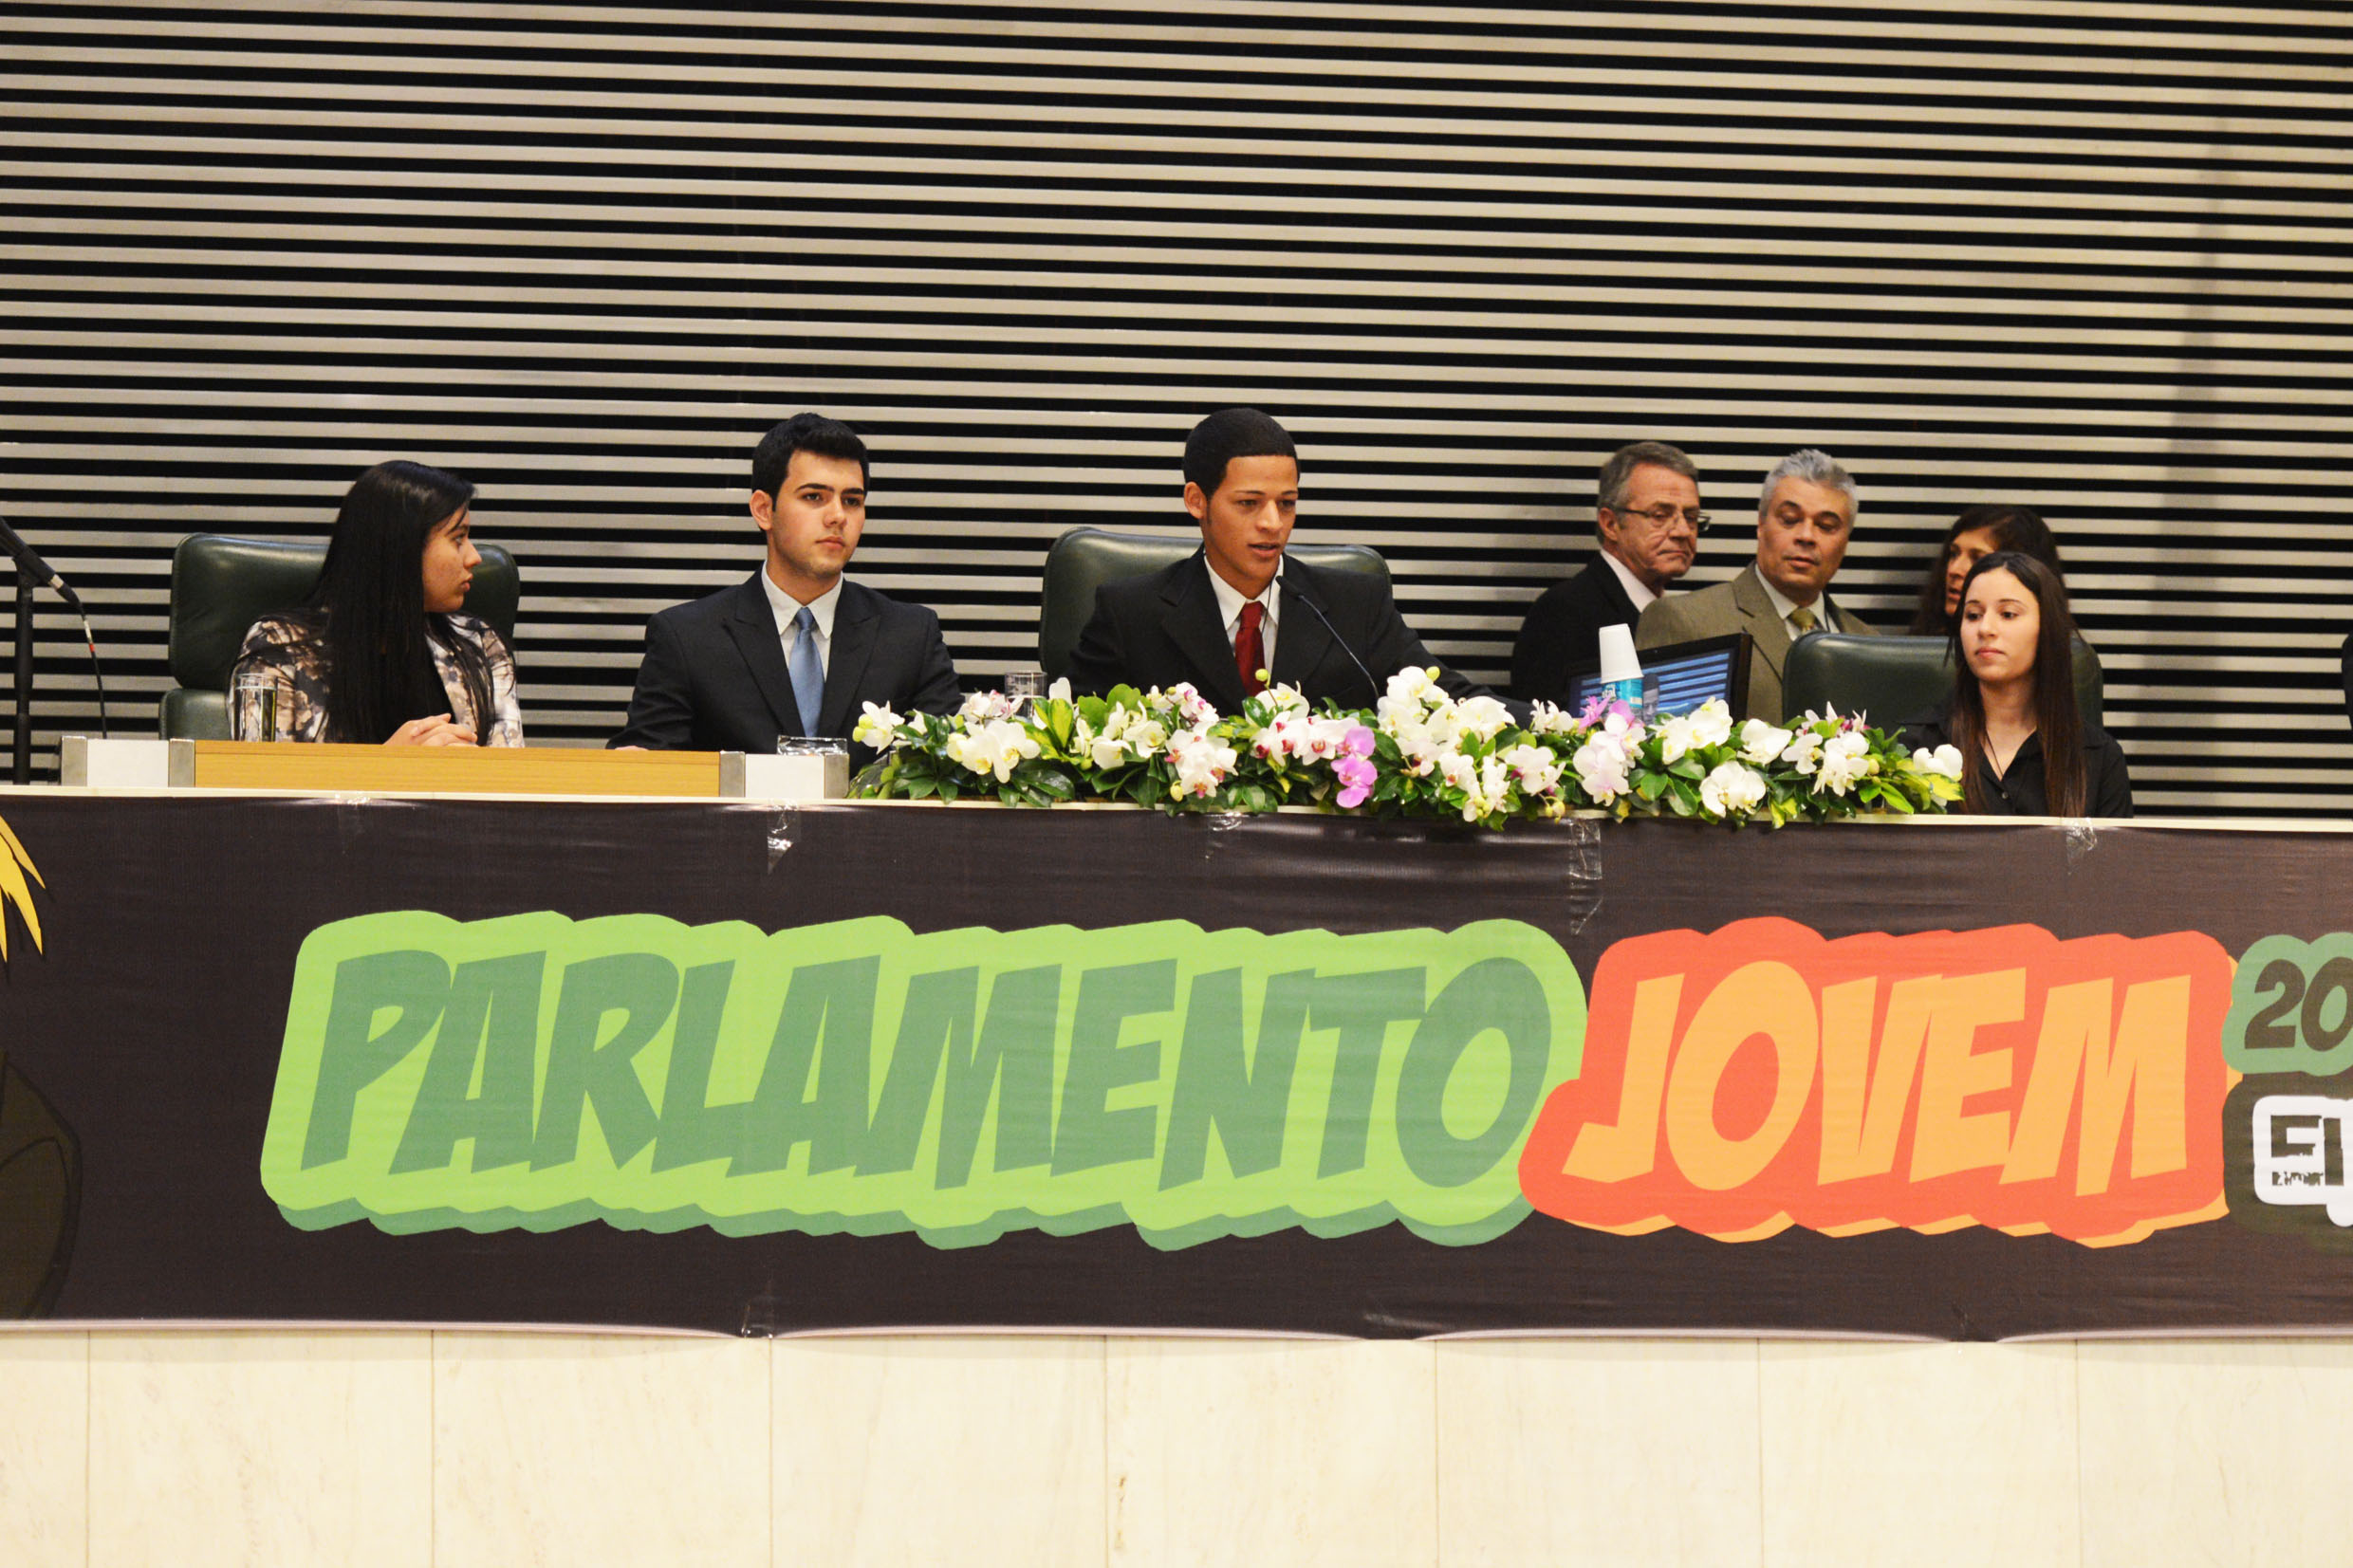 Mesa diretora do Parlamento Jovem 2013 <a style='float:right;color:#ccc' href='https://www3.al.sp.gov.br/repositorio/noticia/N-11-2013/fg132736.jpg' target=_blank><i class='bi bi-zoom-in'></i> Clique para ver a imagem </a>